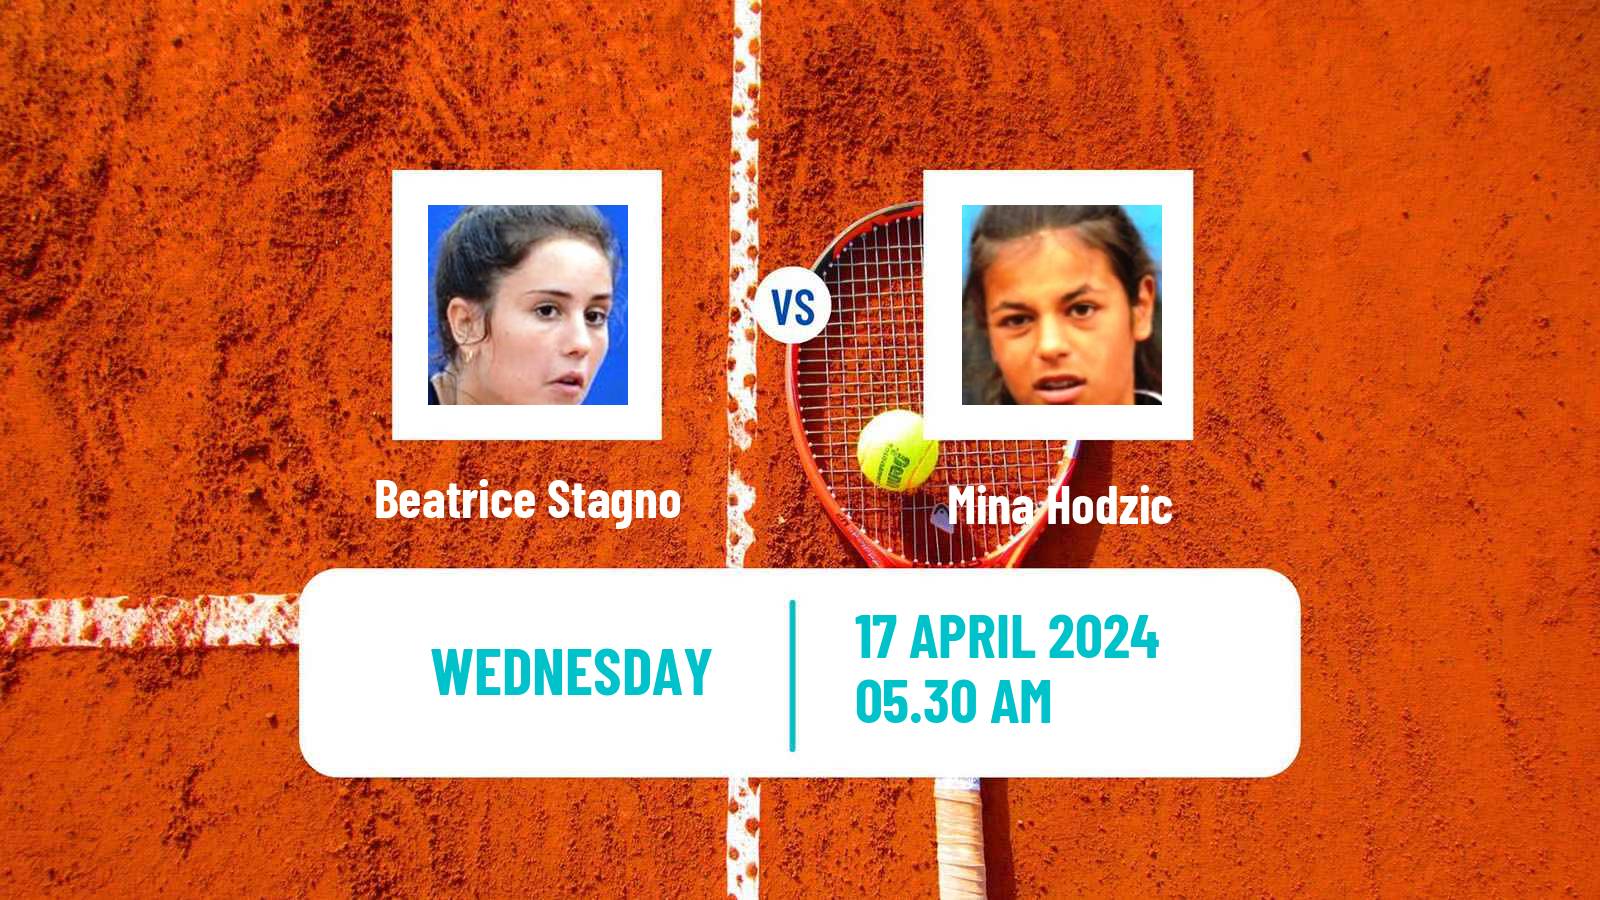 Tennis ITF W15 Antalya 10 Women Beatrice Stagno - Mina Hodzic